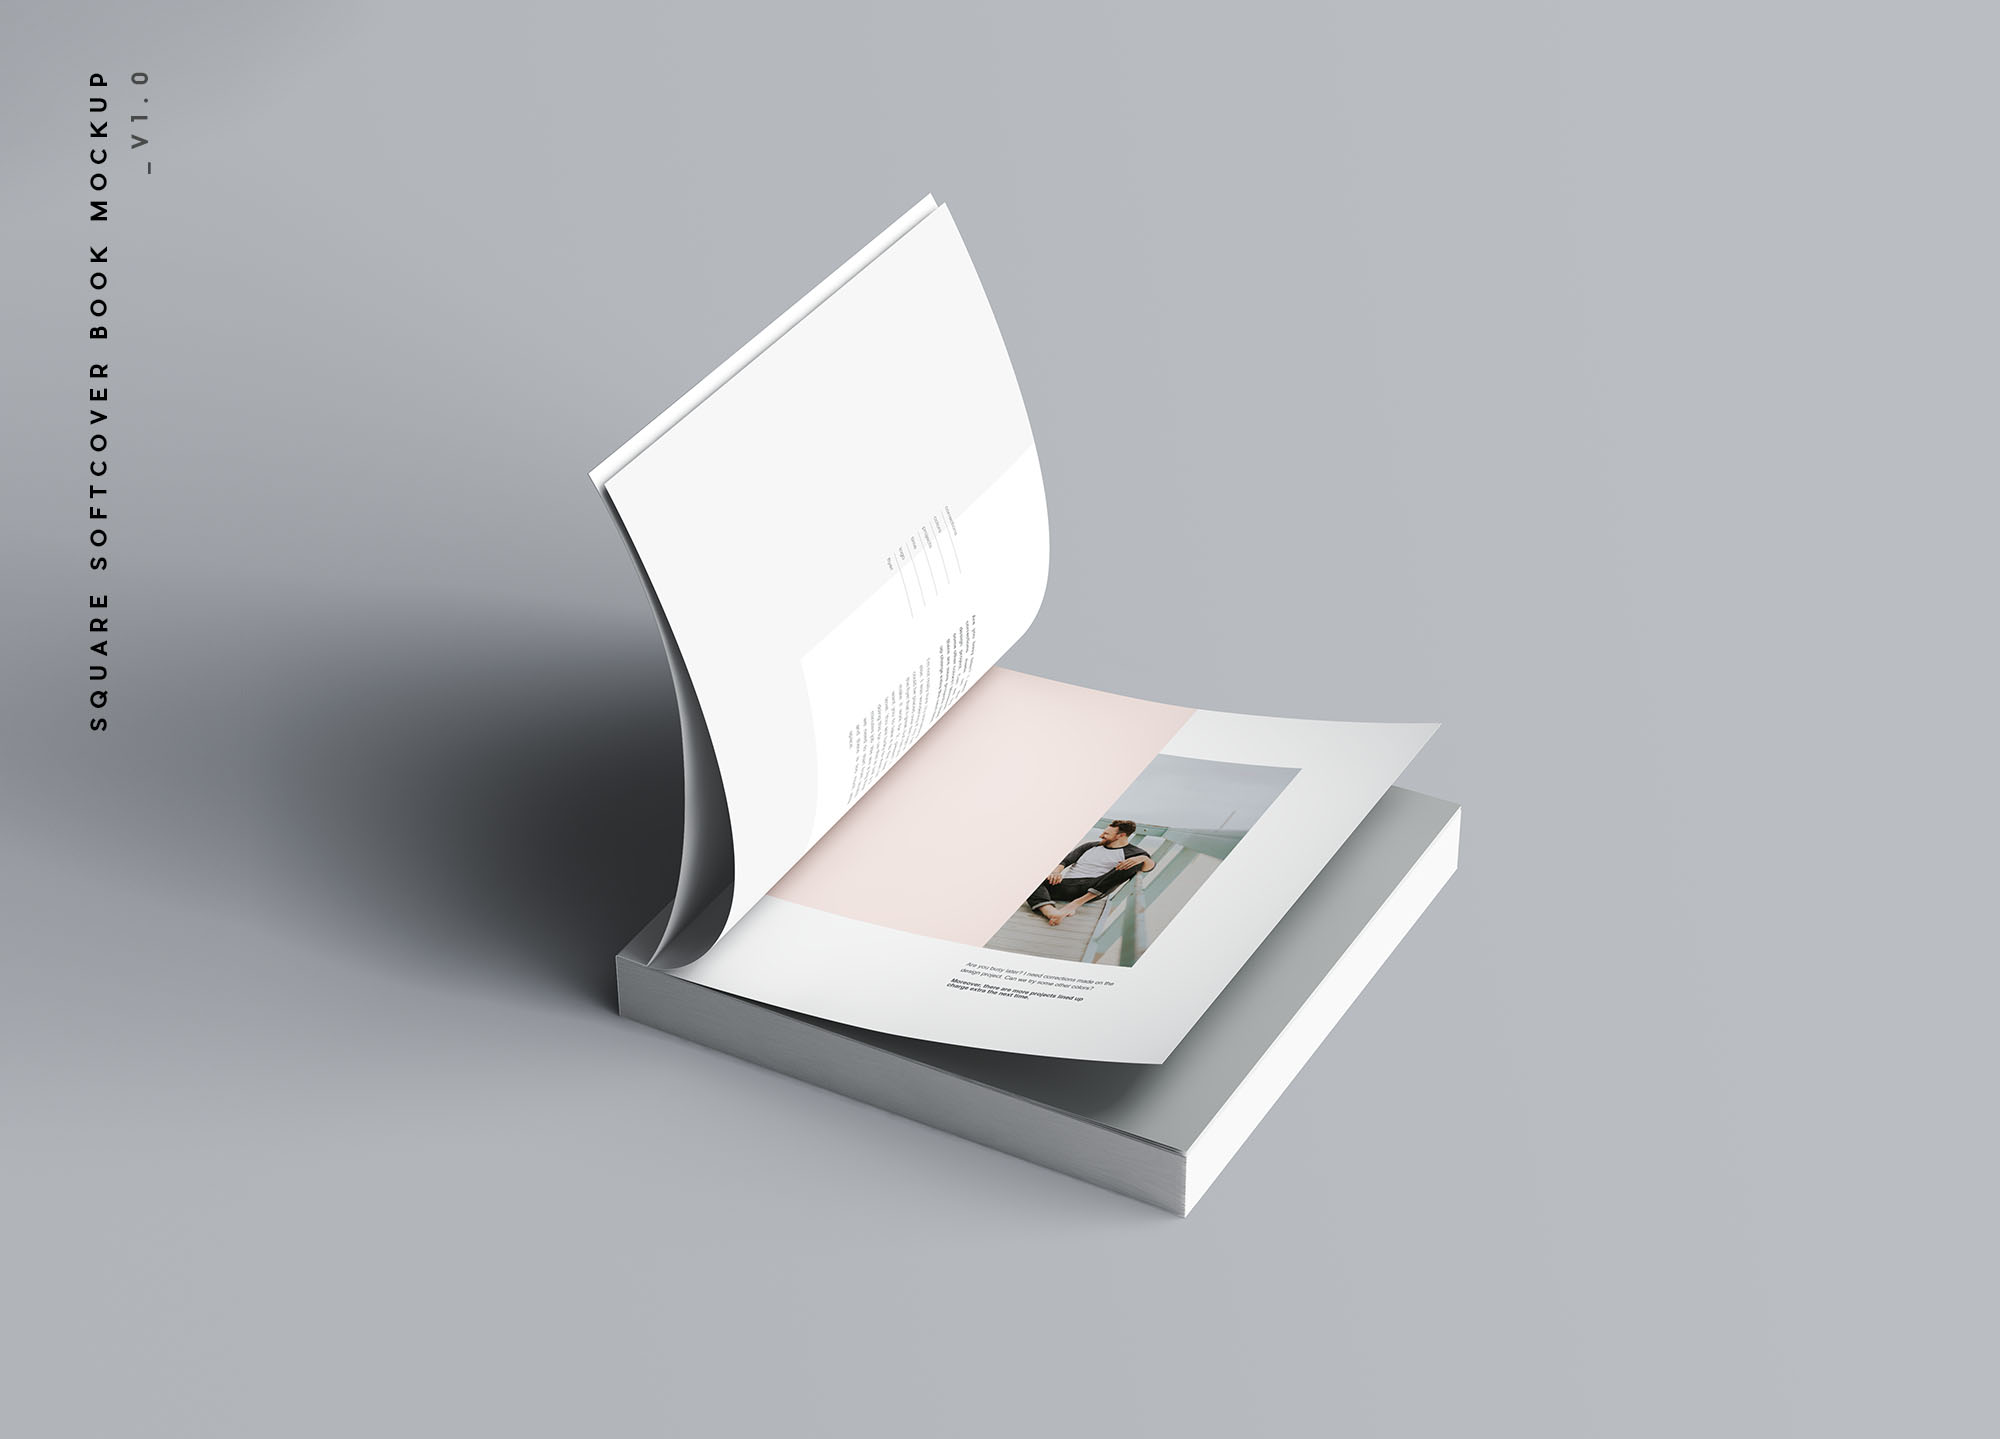 方形软封图书内页版式设计效果图样机素材中国精选 Square Softcover Book Mockup插图